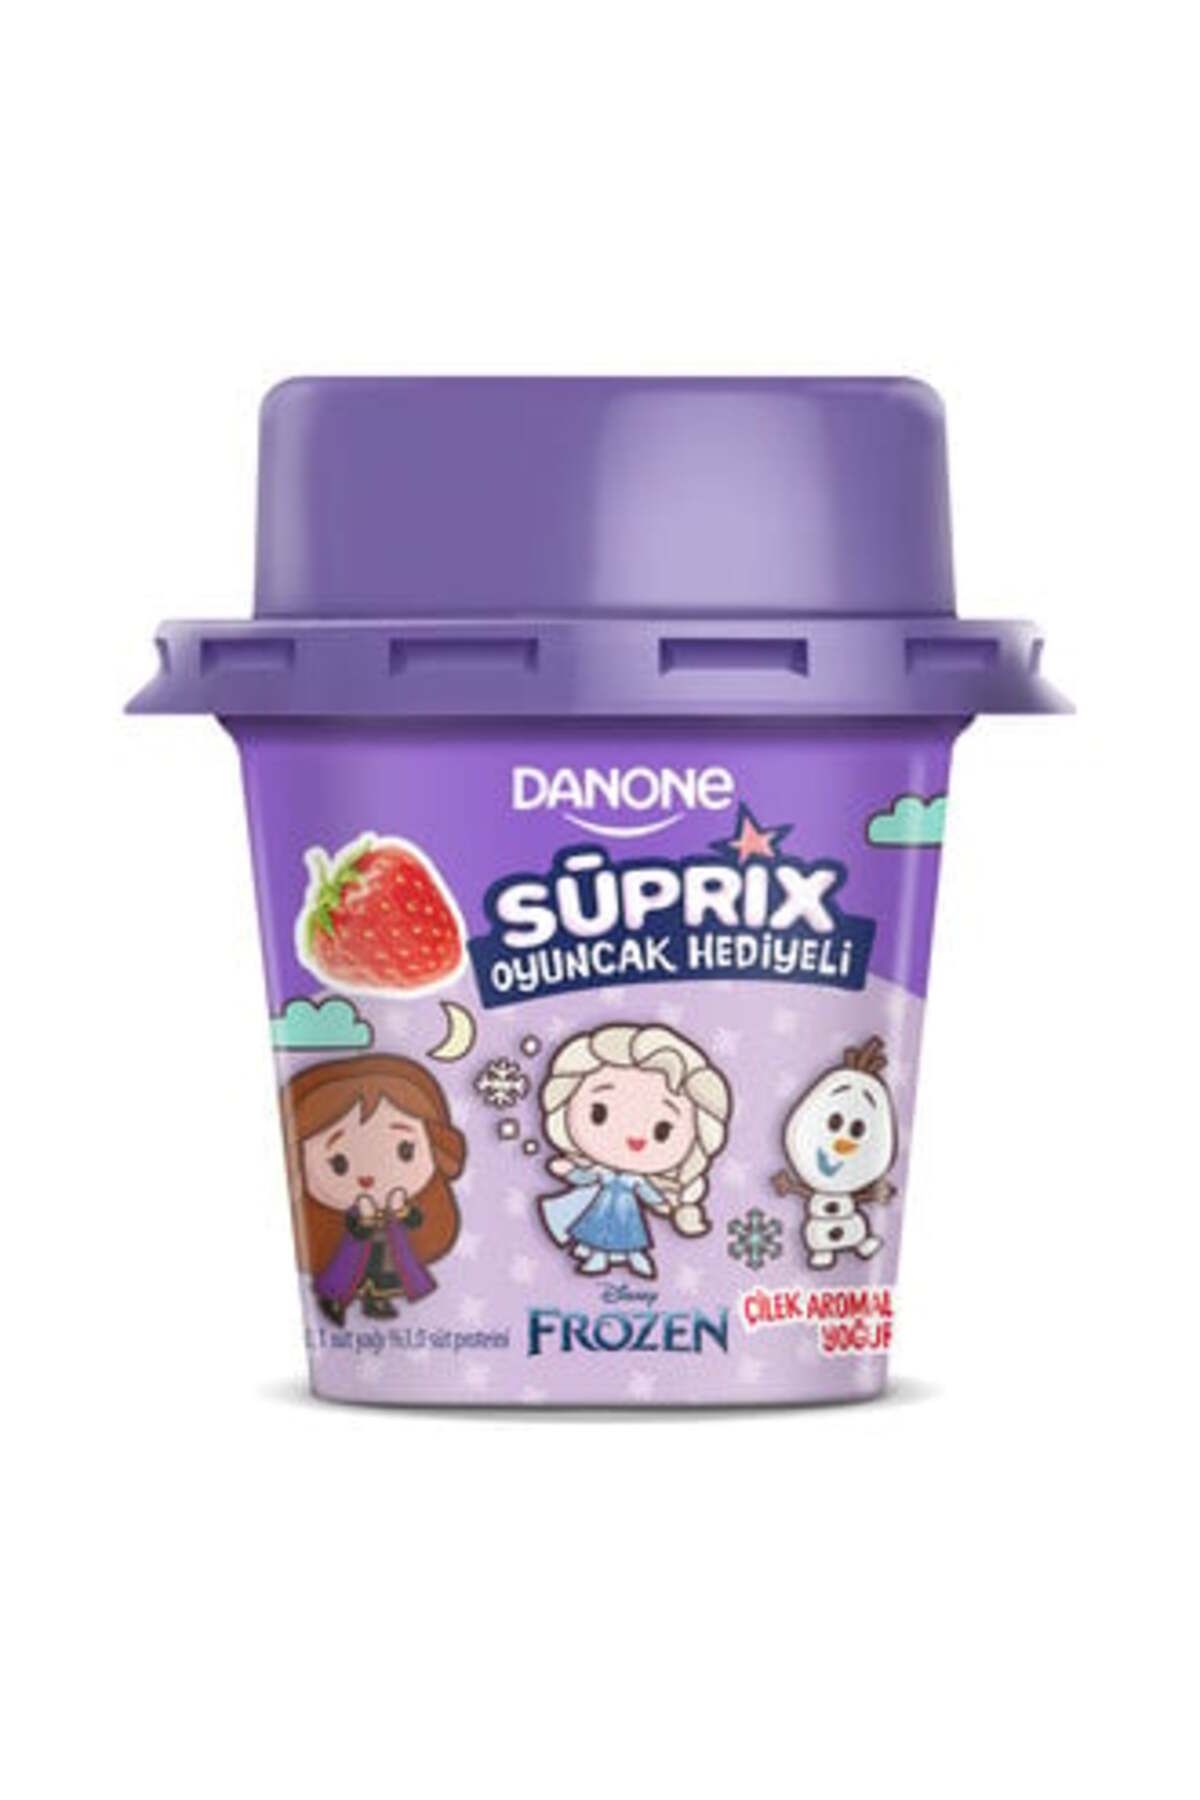 Danone Süprix Frozen Oyuncak Çilek Aromalı Yoğurt 90 Gr ( 2 ADET )